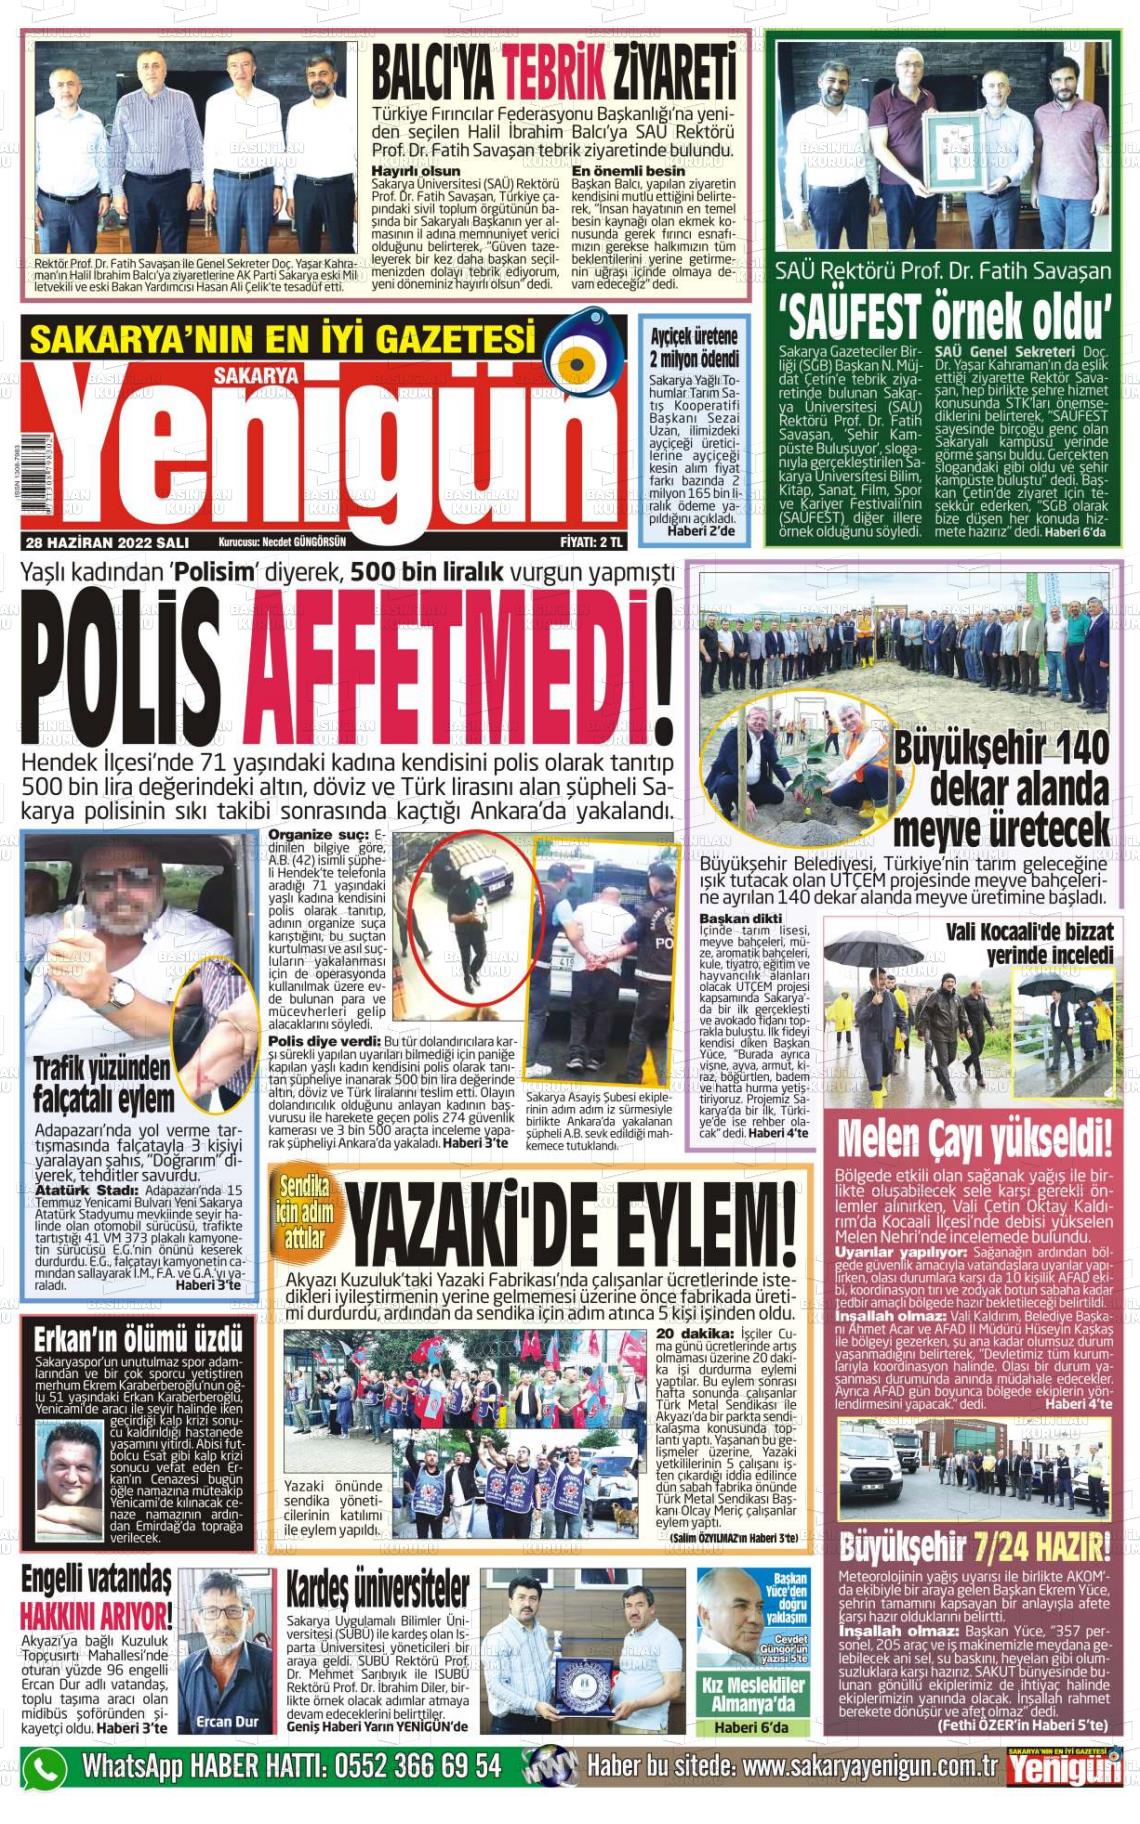 28 Haziran 2022 Sakarya Yenigün Gazete Manşeti